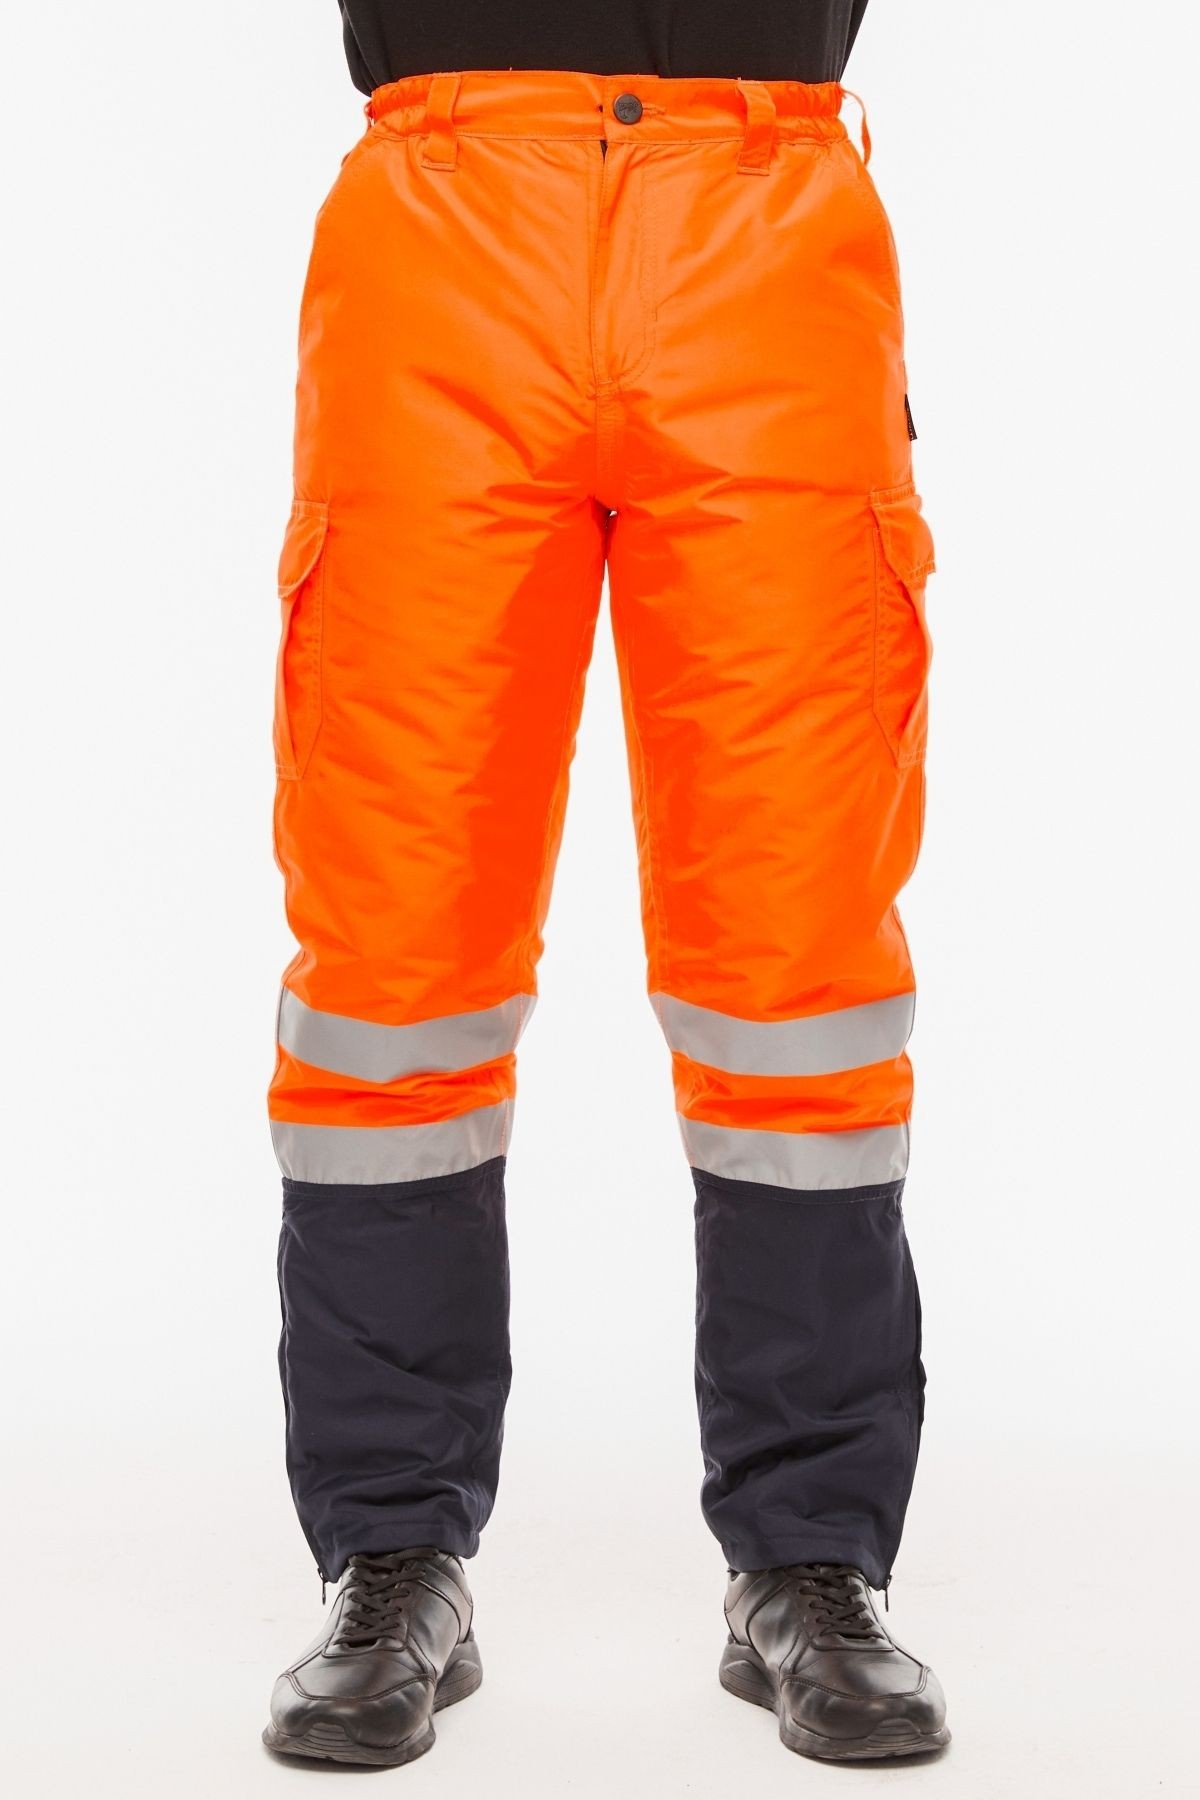 Uniprom İş Pantolonu Su ve Rüzgar Geçirmez İçi Elyaflı Kışlık Erkek Neon Turuncu